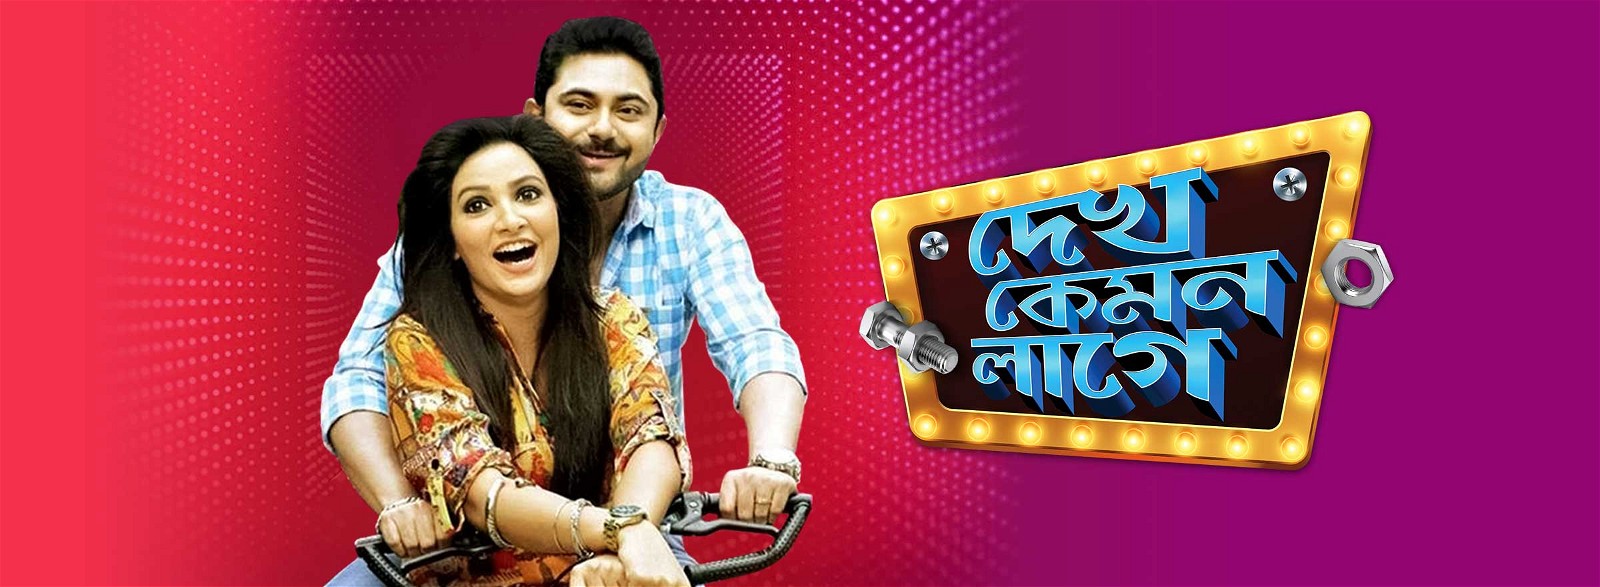 Dekh kemon lage bengali movie download